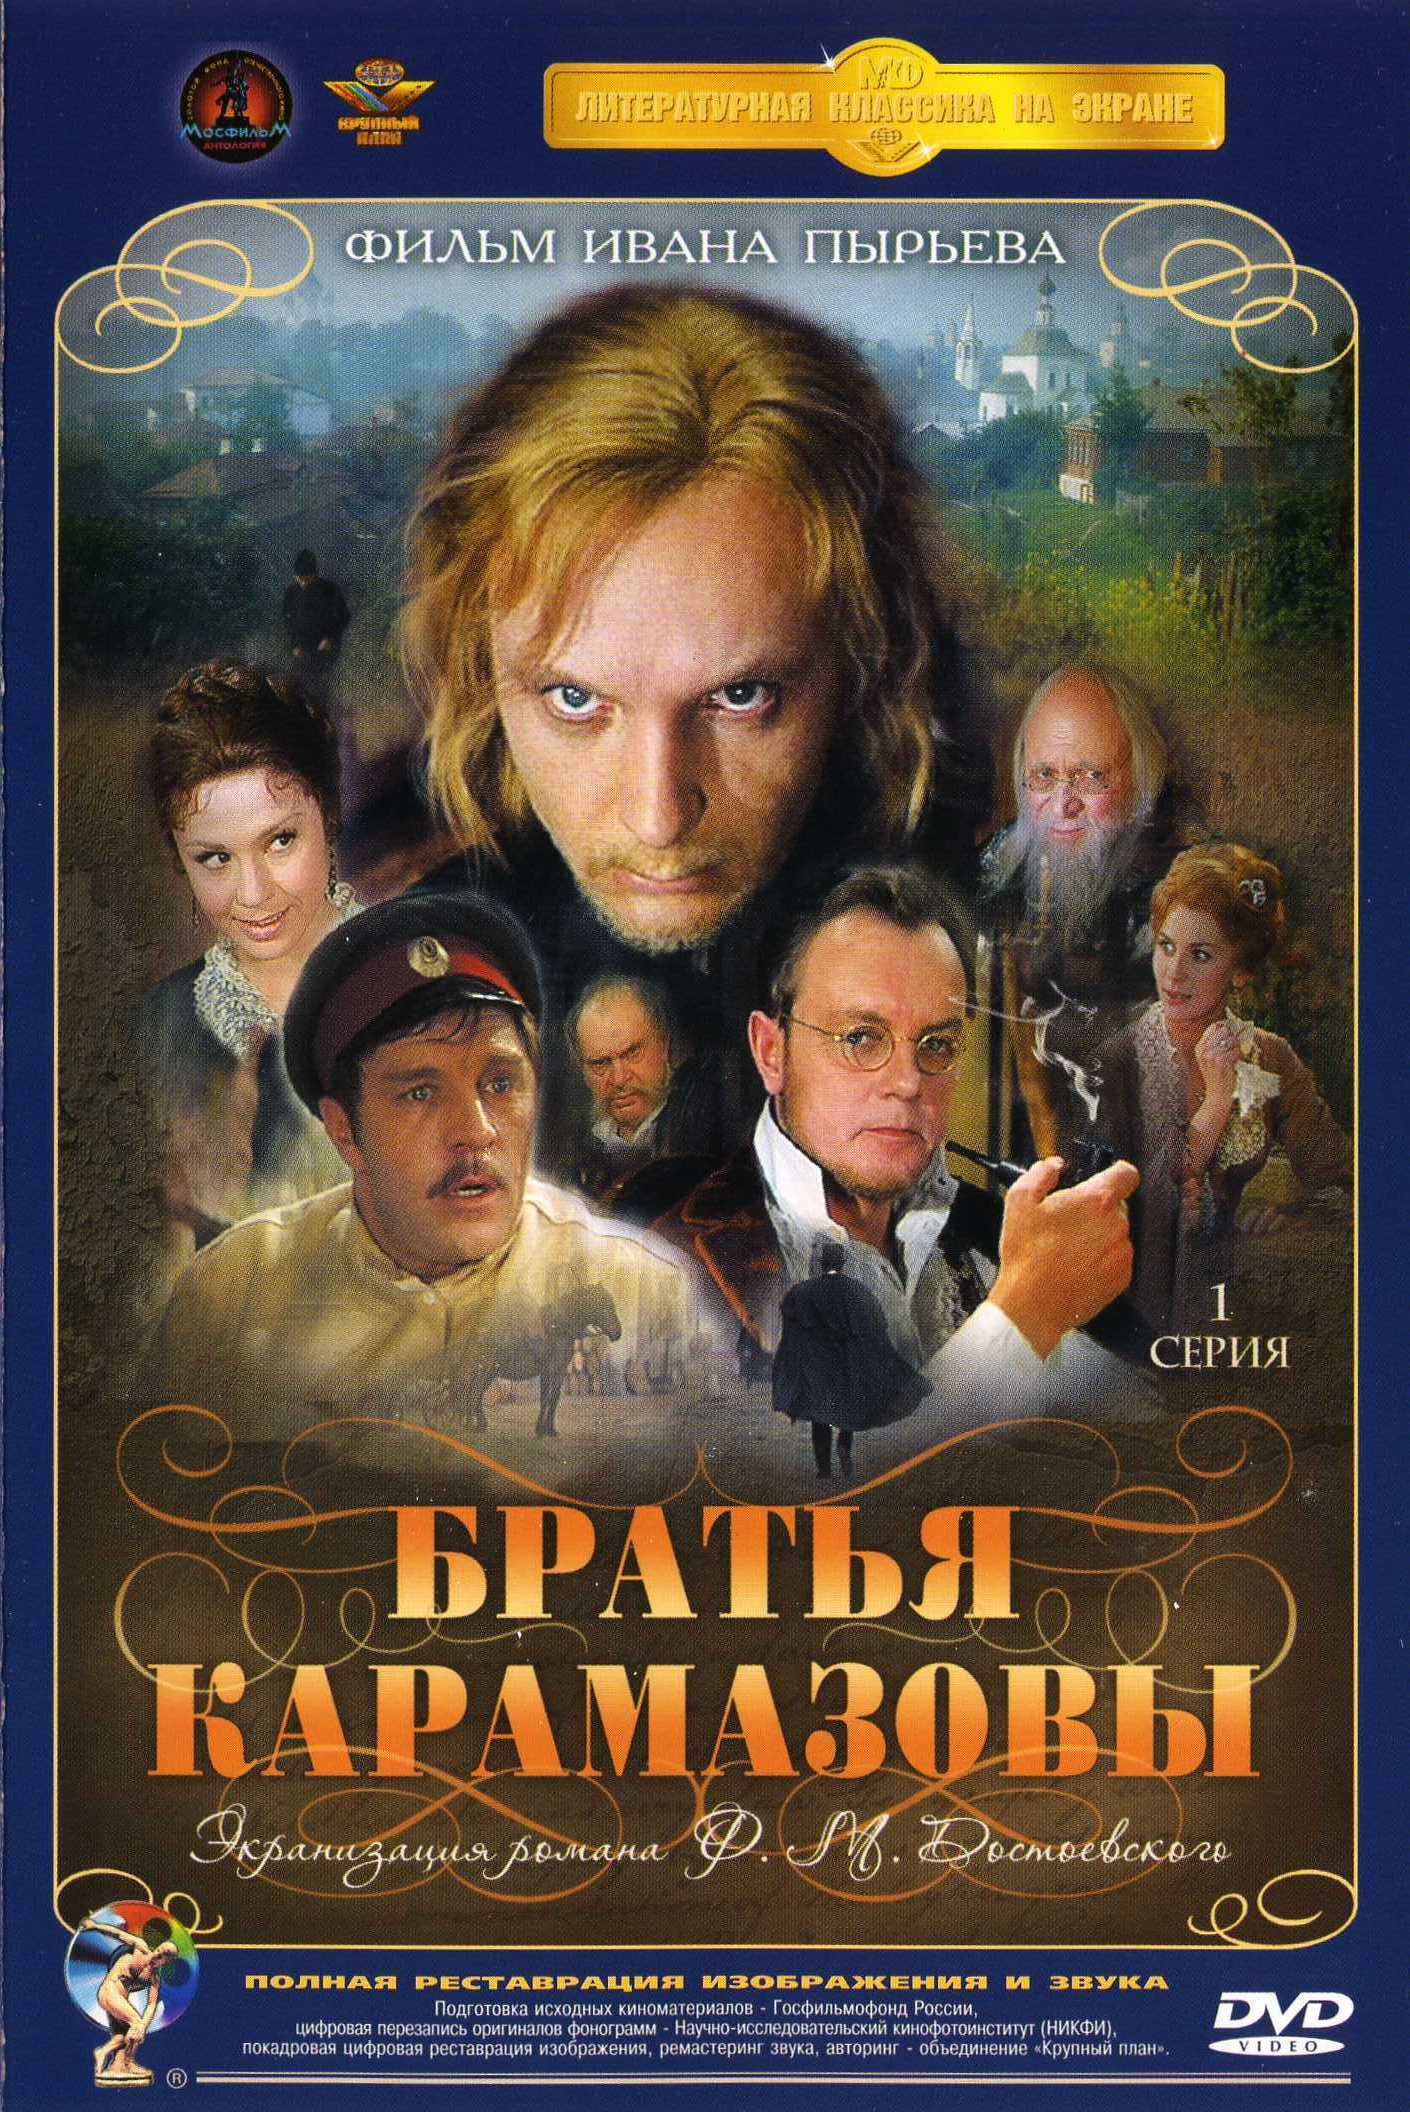 Братья Карамазовы (1968) DVDRip